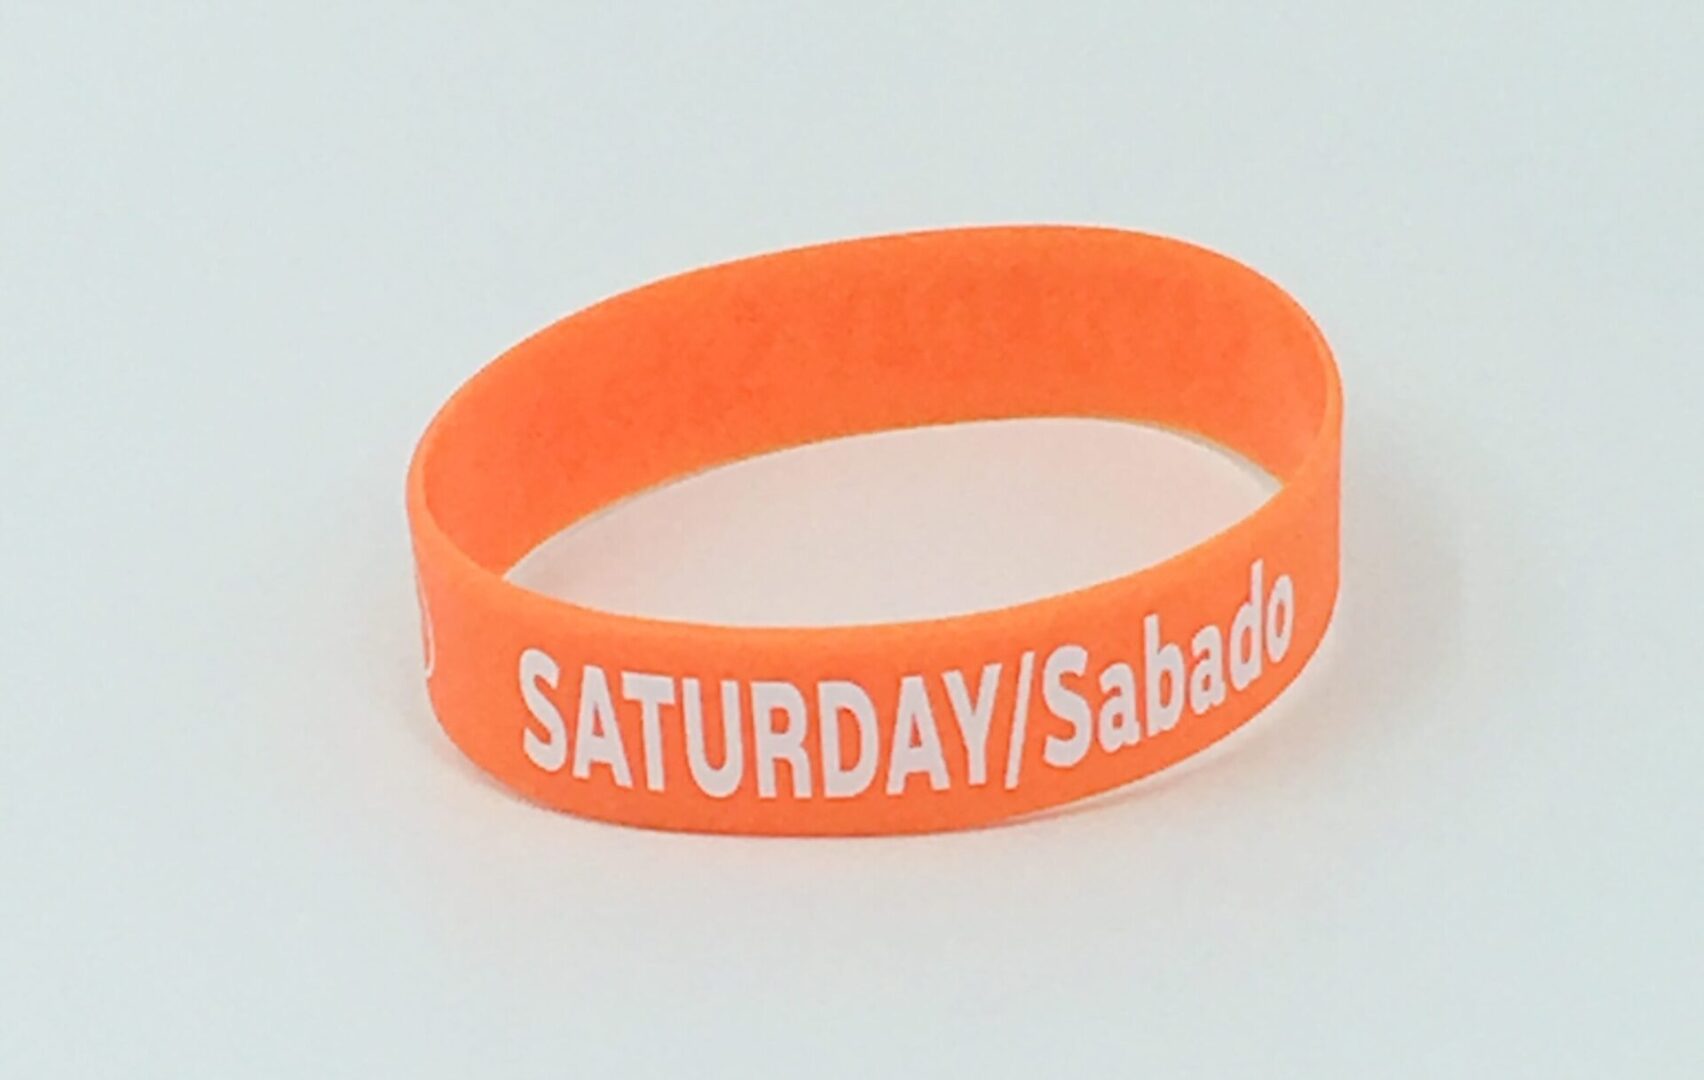 Saturday/Sabado